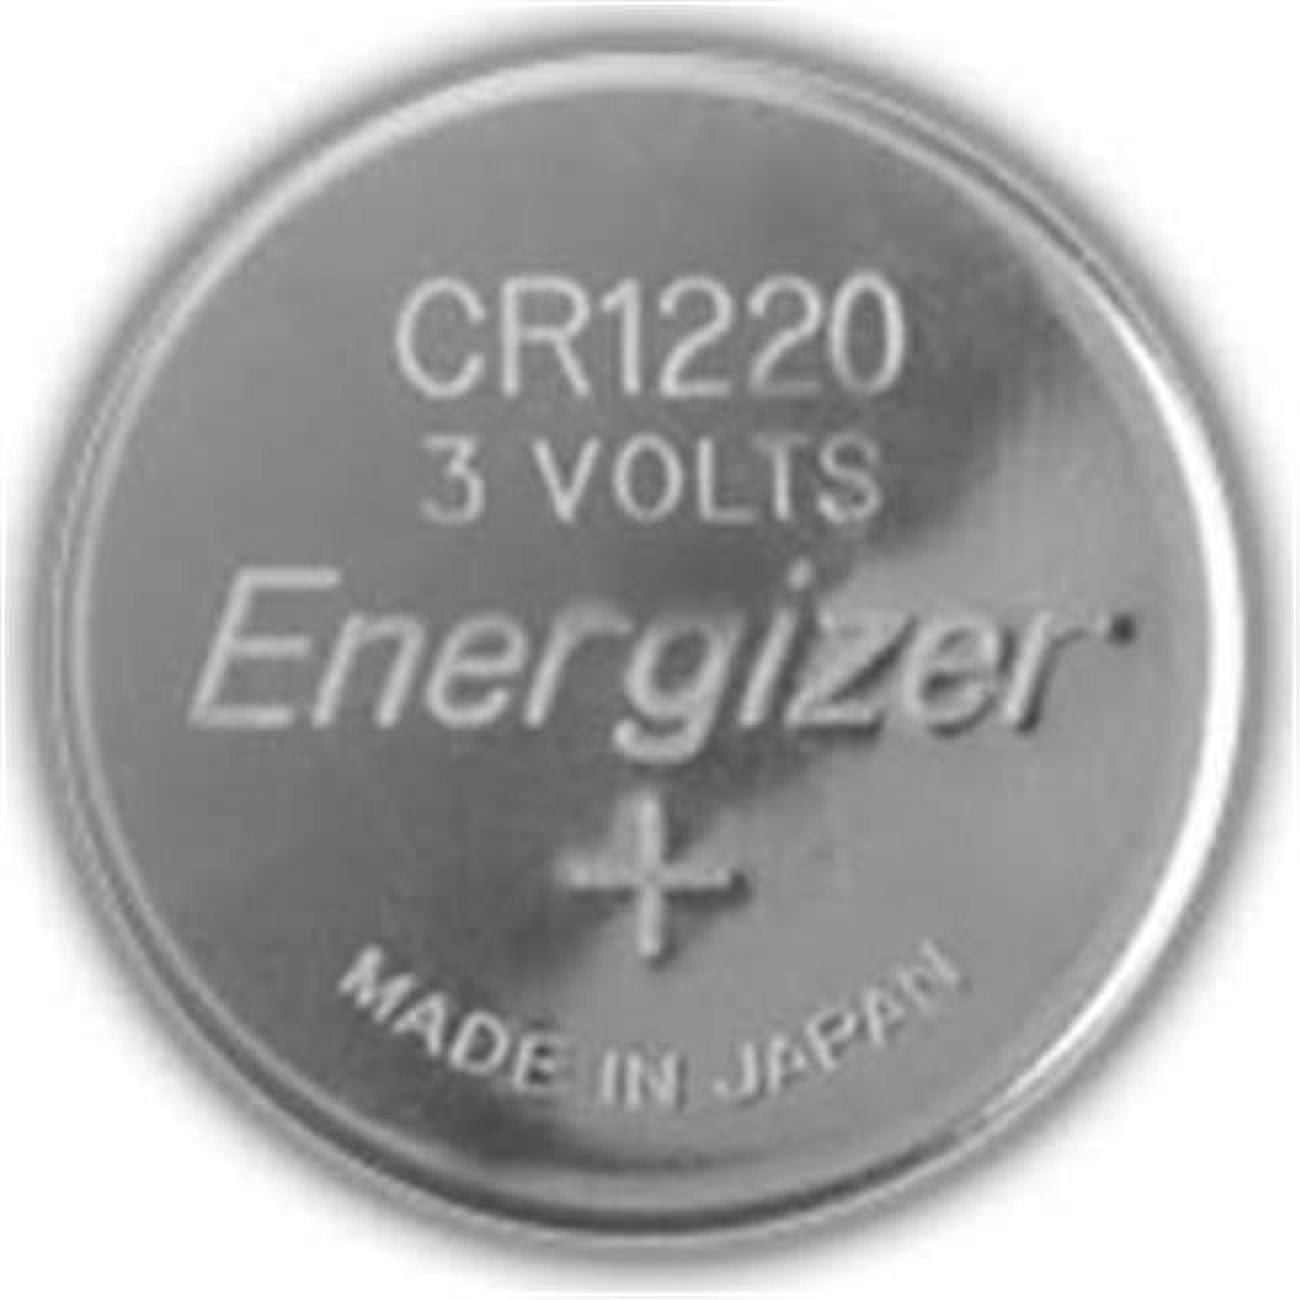 Lot de 4 piles bouton Eunicell lithium CR1220 / CR-1220 / CR 1220